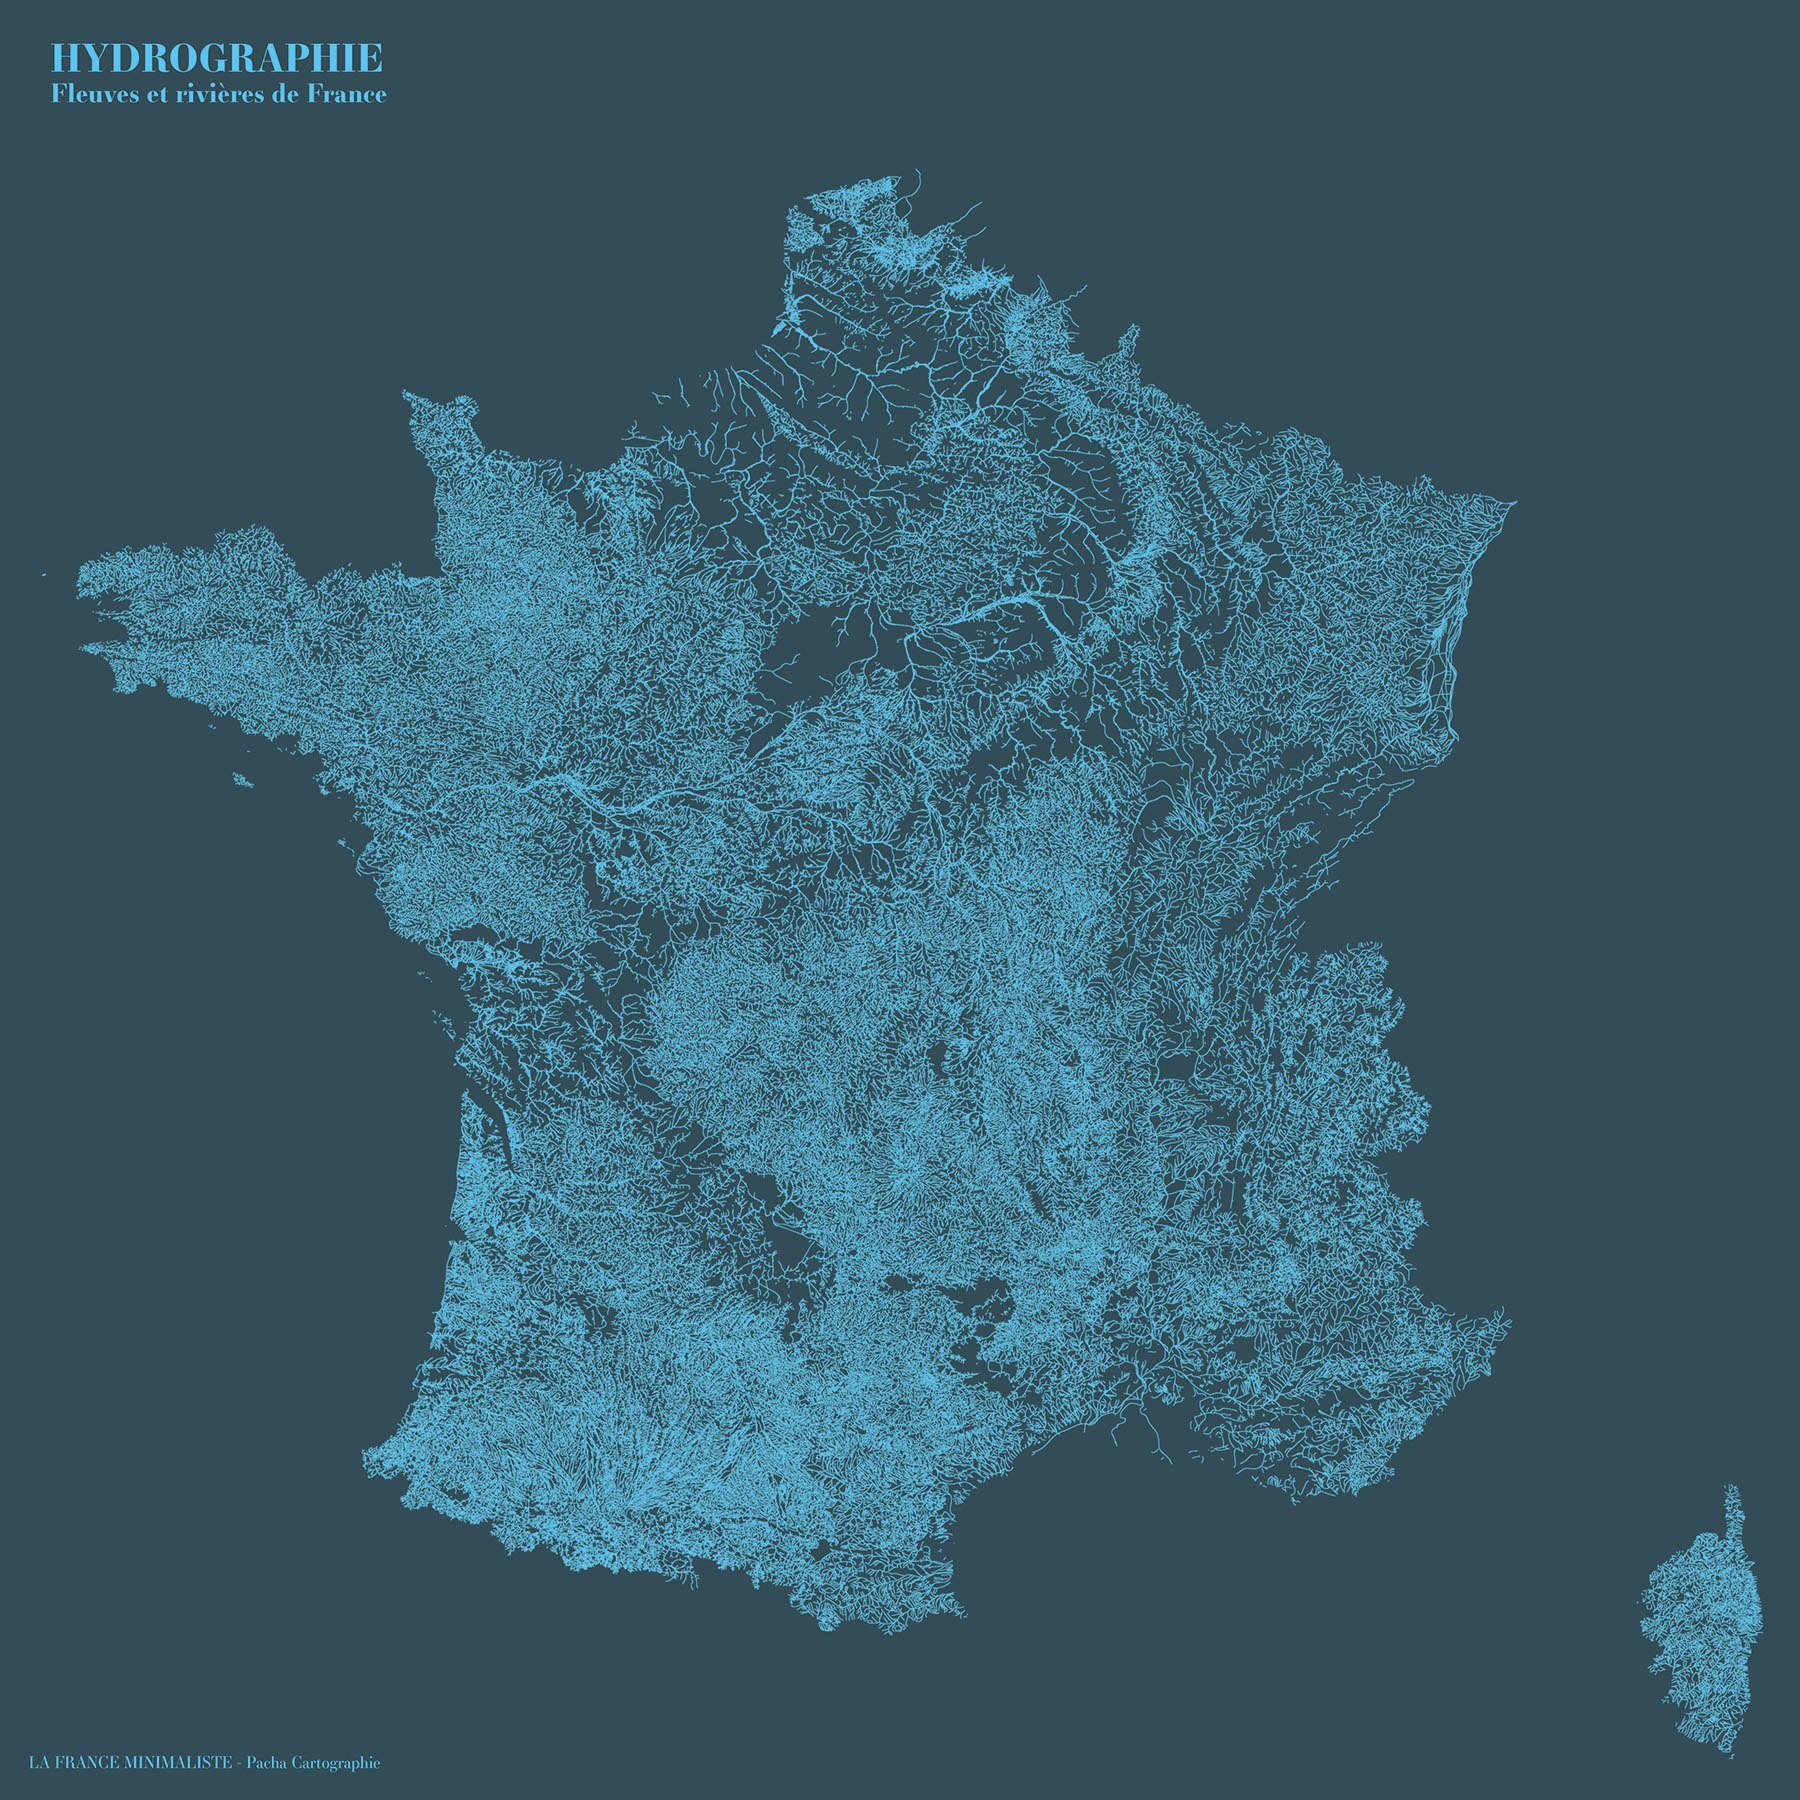 La France minimaliste - Hydrographie - Guillaume Sciaux - Cartographe professionnel